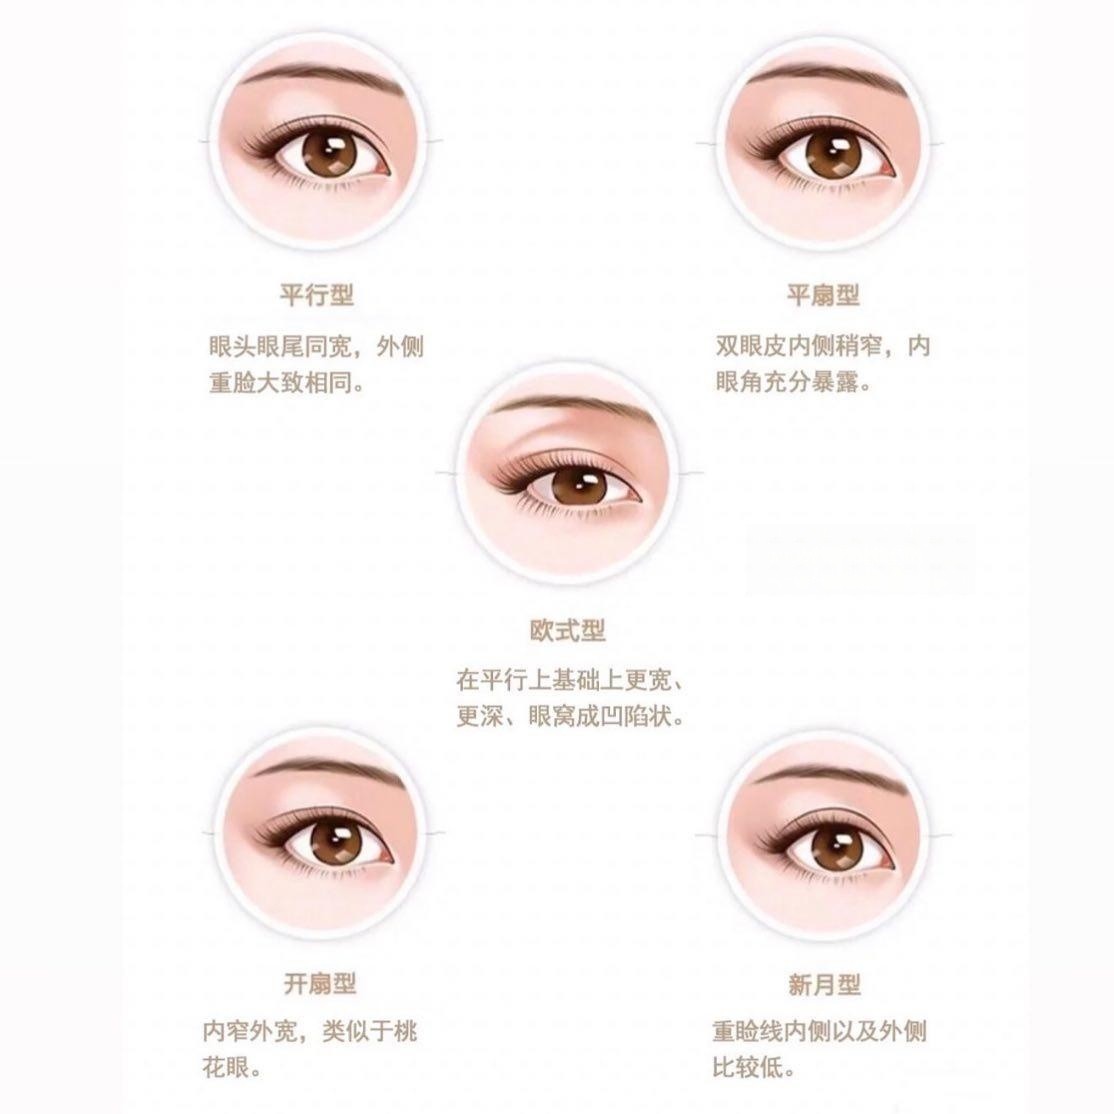 哪些眼型适合做双眼皮,而双眼皮具体又分哪几种呢?